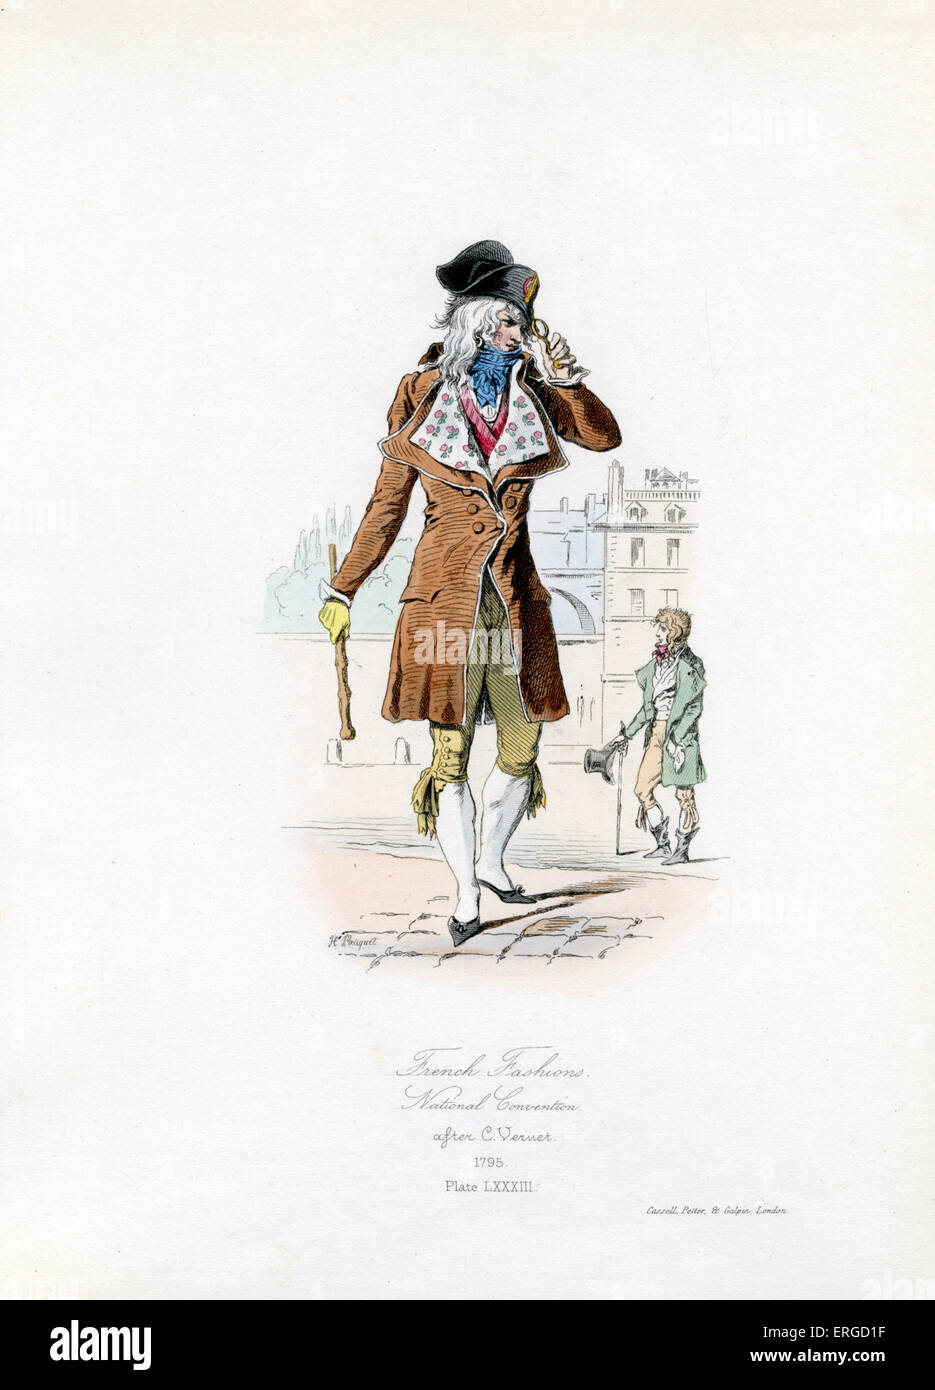 Französische Mode des Nationalkonvents, 1795 - vom Kupferstich von Hippolyte Pauquet, nach C. Vernet. Der National Convention war die Versammlung, die Macht in den ersten Jahren der französischen Revolution statt. Platte LXXXIII. Stockfoto